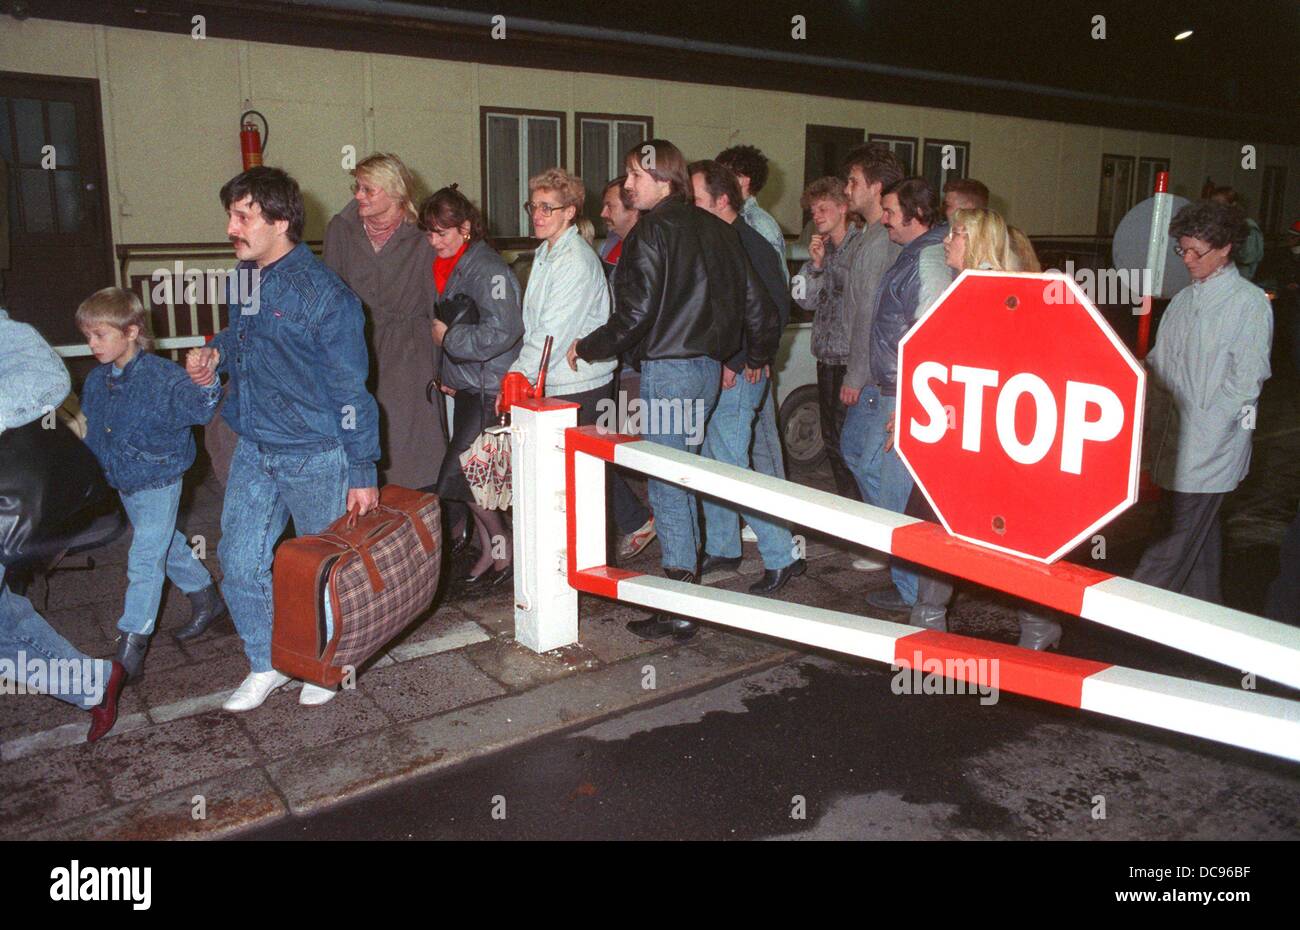 La foule des Berlinois de l'est adopter un point de franchissement de frontière en direction ouest pendant la nuit du 9 au 10 septembre, Berlin, 1989. Une nouvelle loi de voyage émis par le gouvernement de la RDA admis allemands de l'est de voyager à l'ouest de la même nuit. Banque D'Images